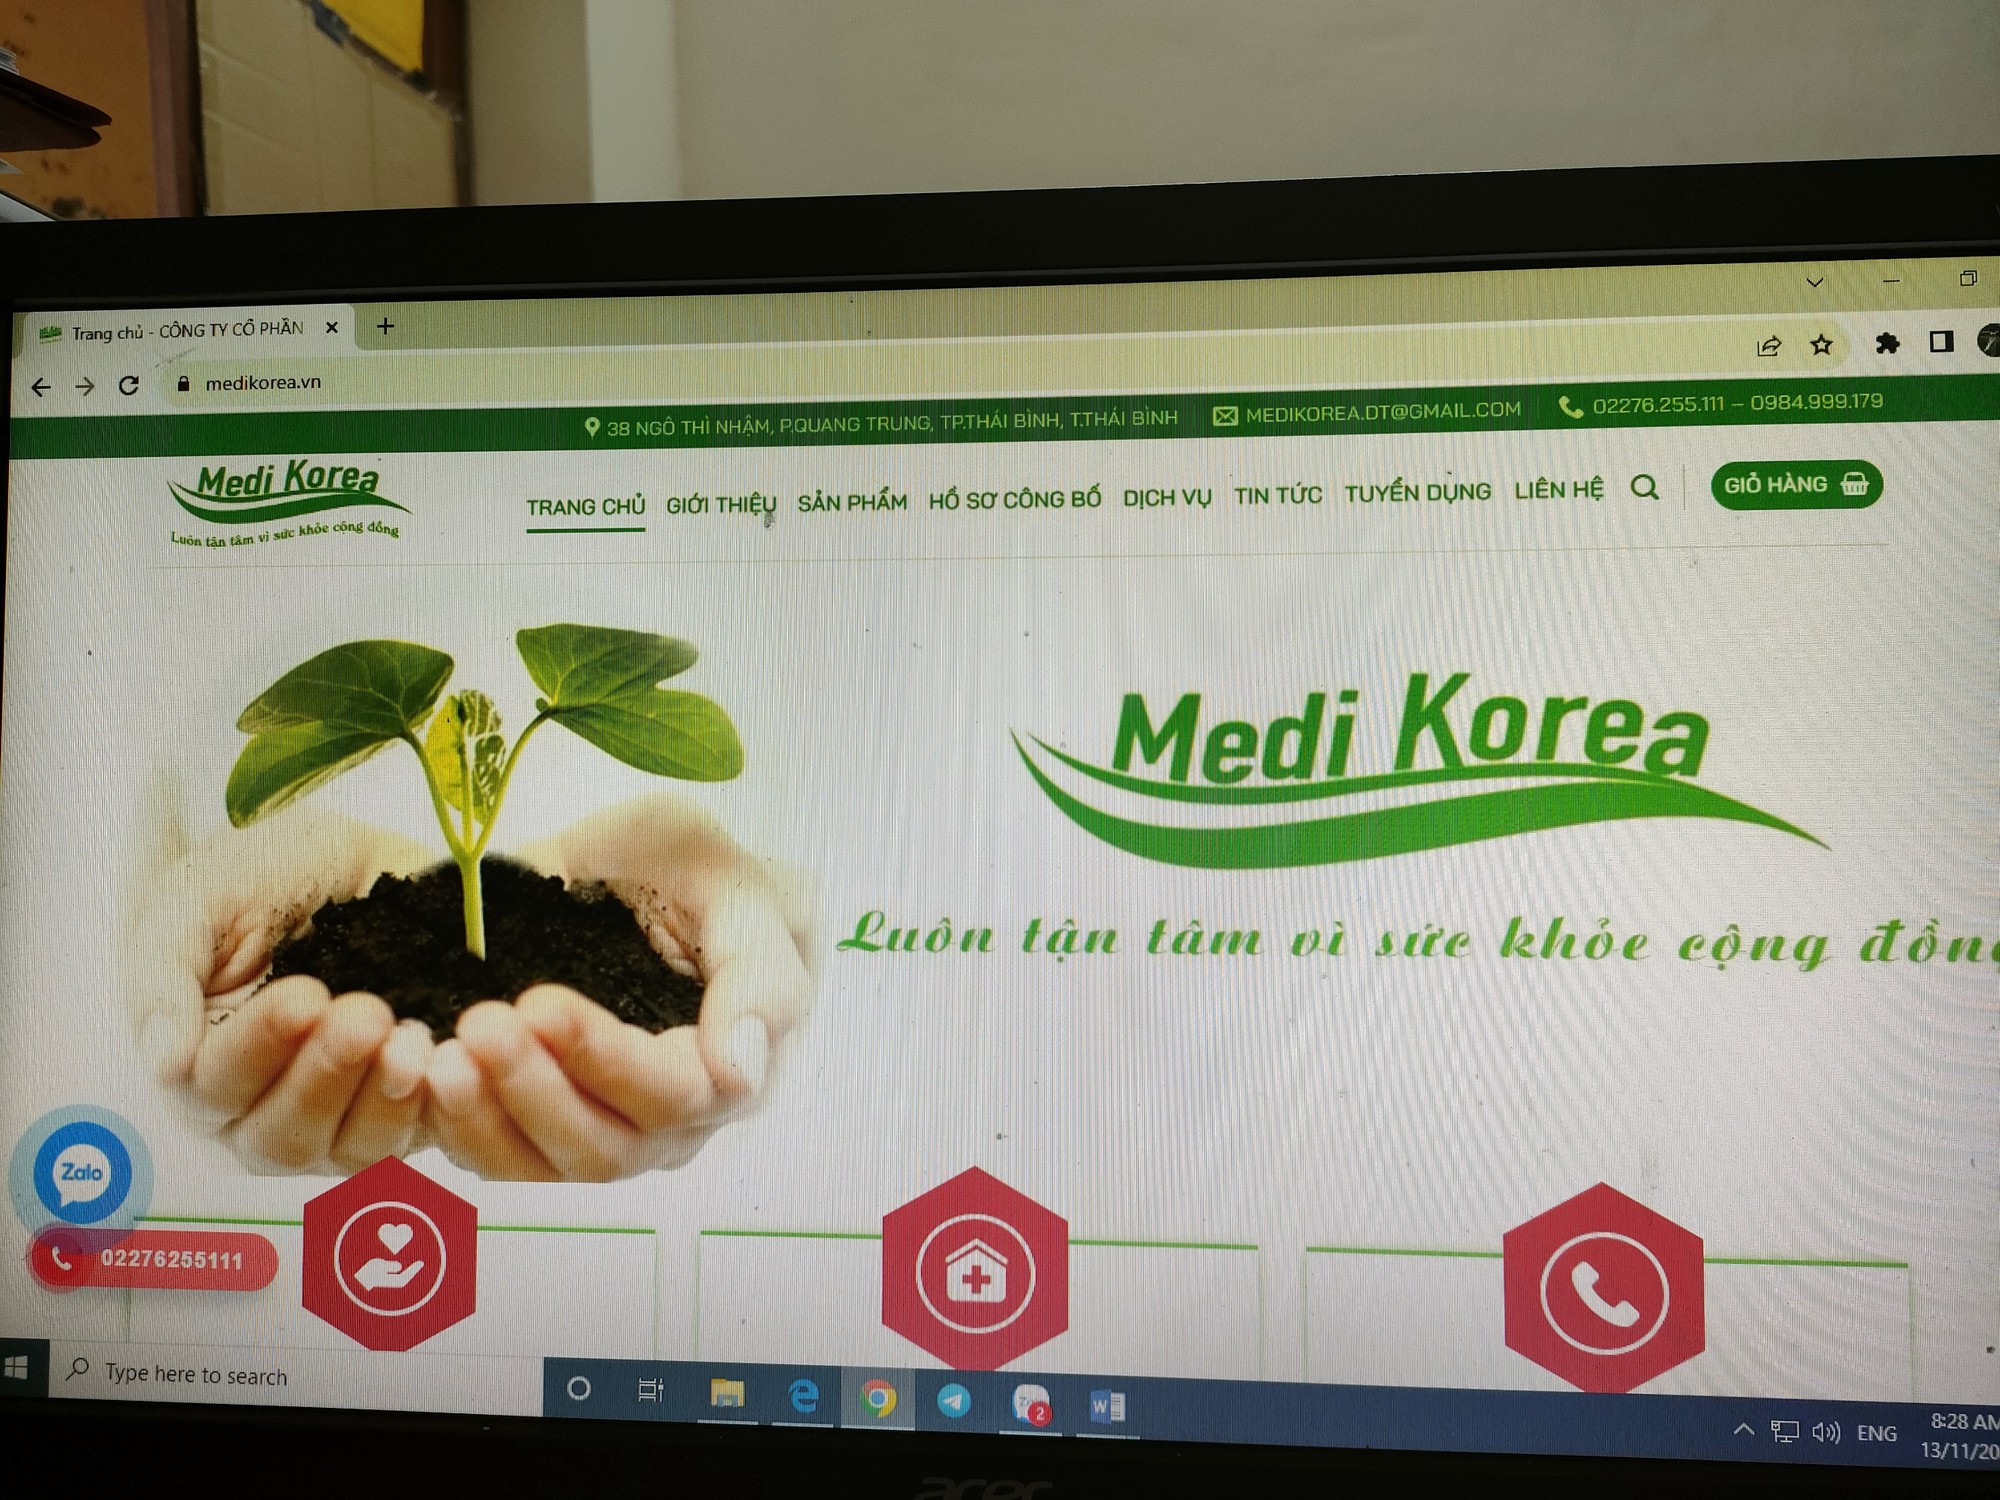 Dược phẩm MEDI KOREA bán sản phẩm bằng trang web &quot;chui&quot; - Ảnh 2.